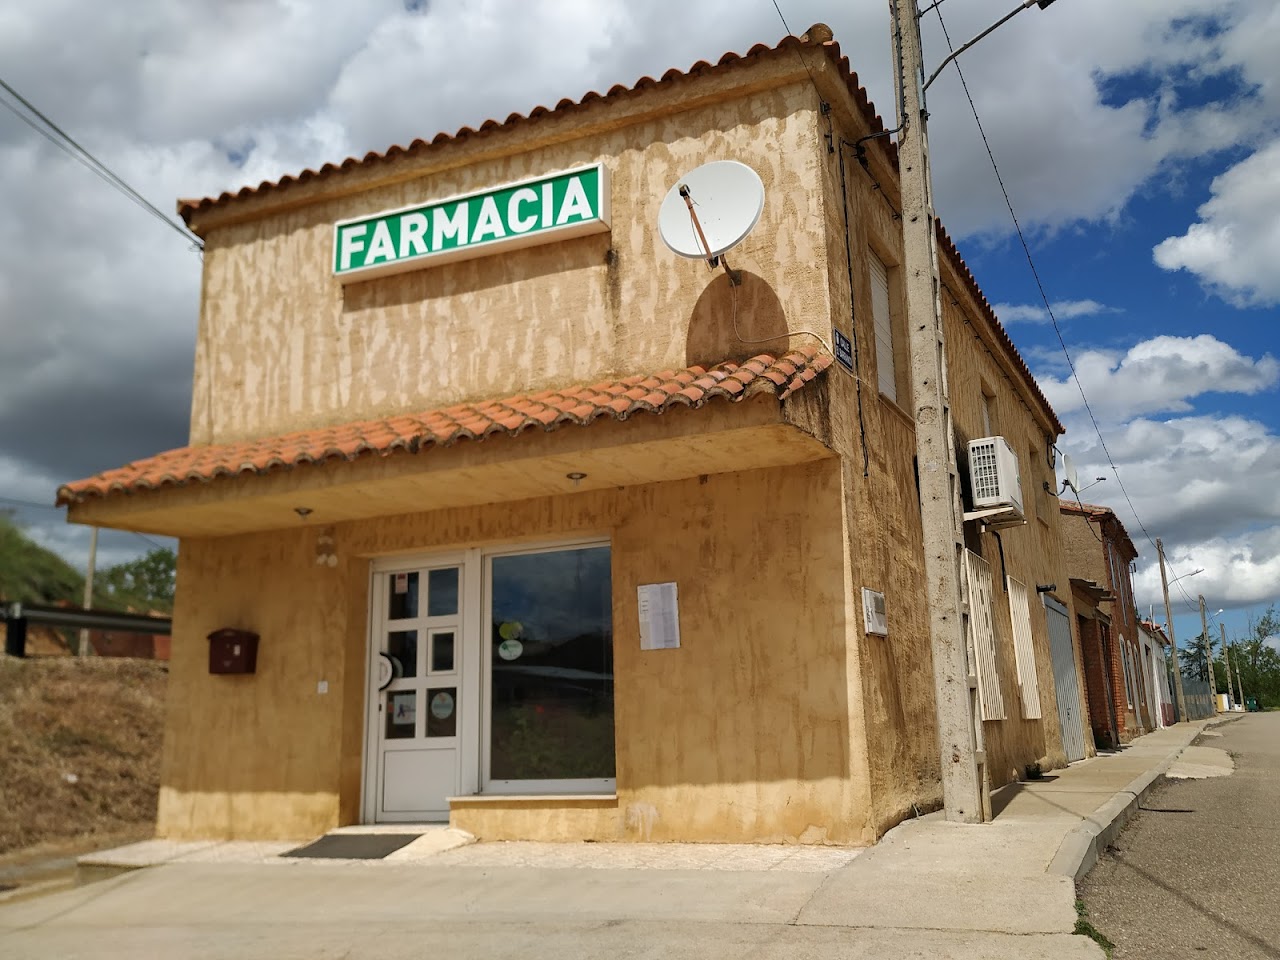 Comprar en Zamora - FARMACIA CRISTINA RAMOS HERNÁNDEZ -  Tierra de Campos